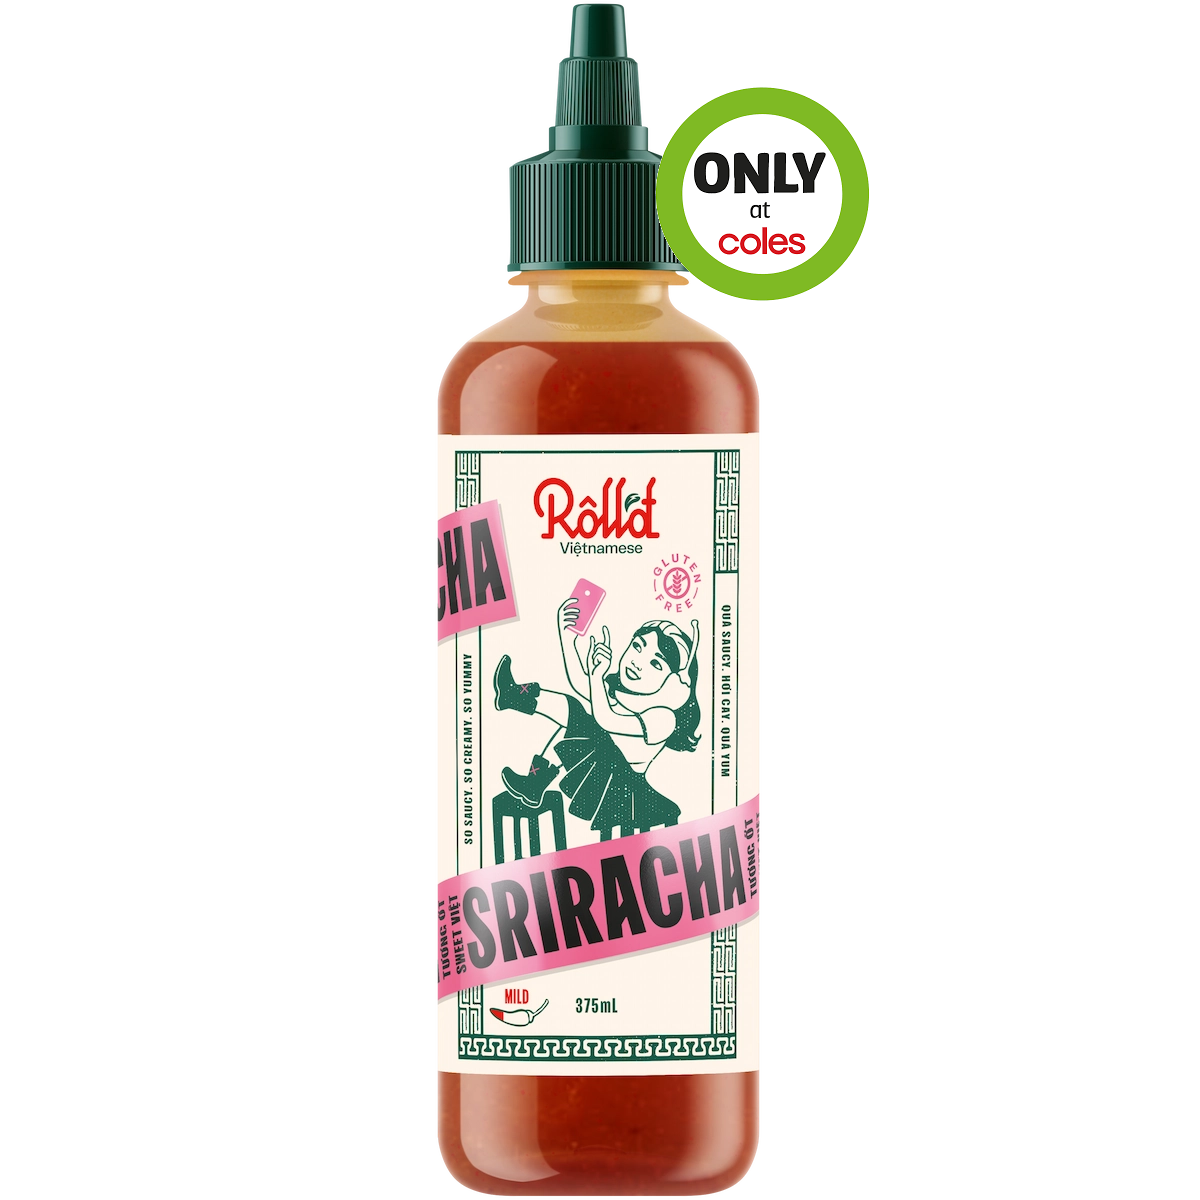 Roll’d Sweet Vietnamese Sriracha Sauce